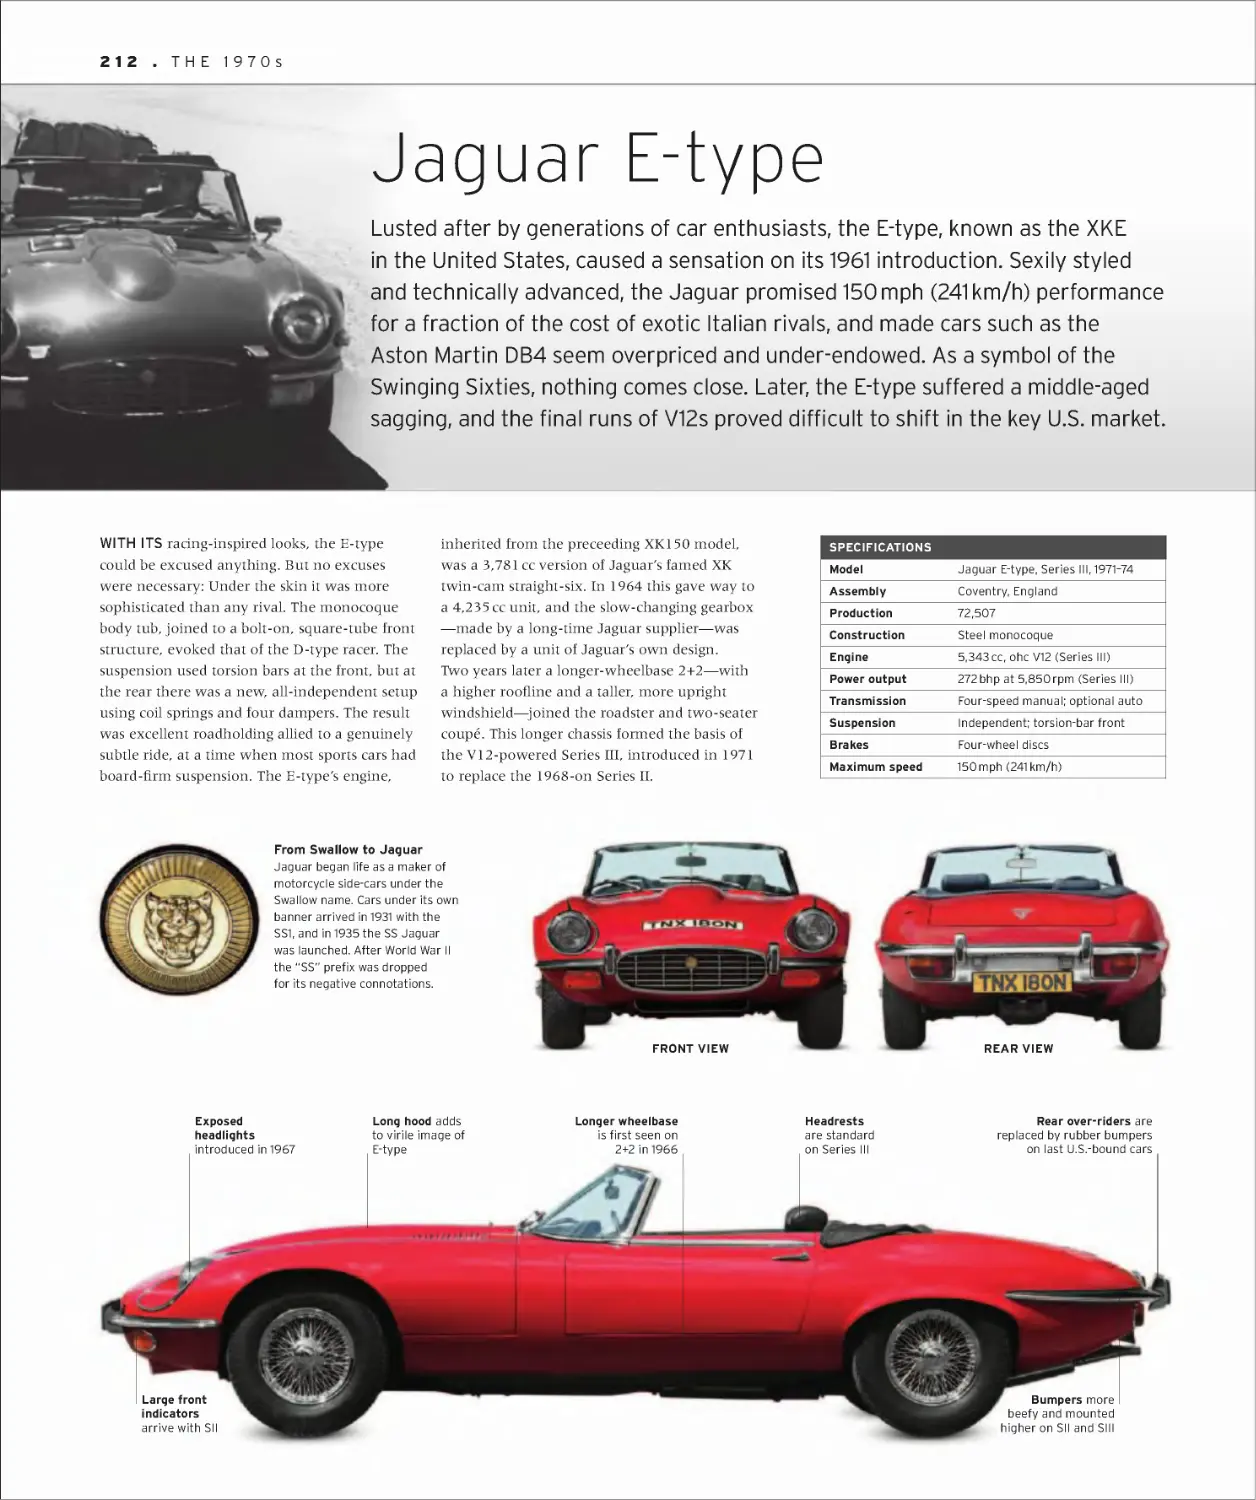 Jaguar E-type 212